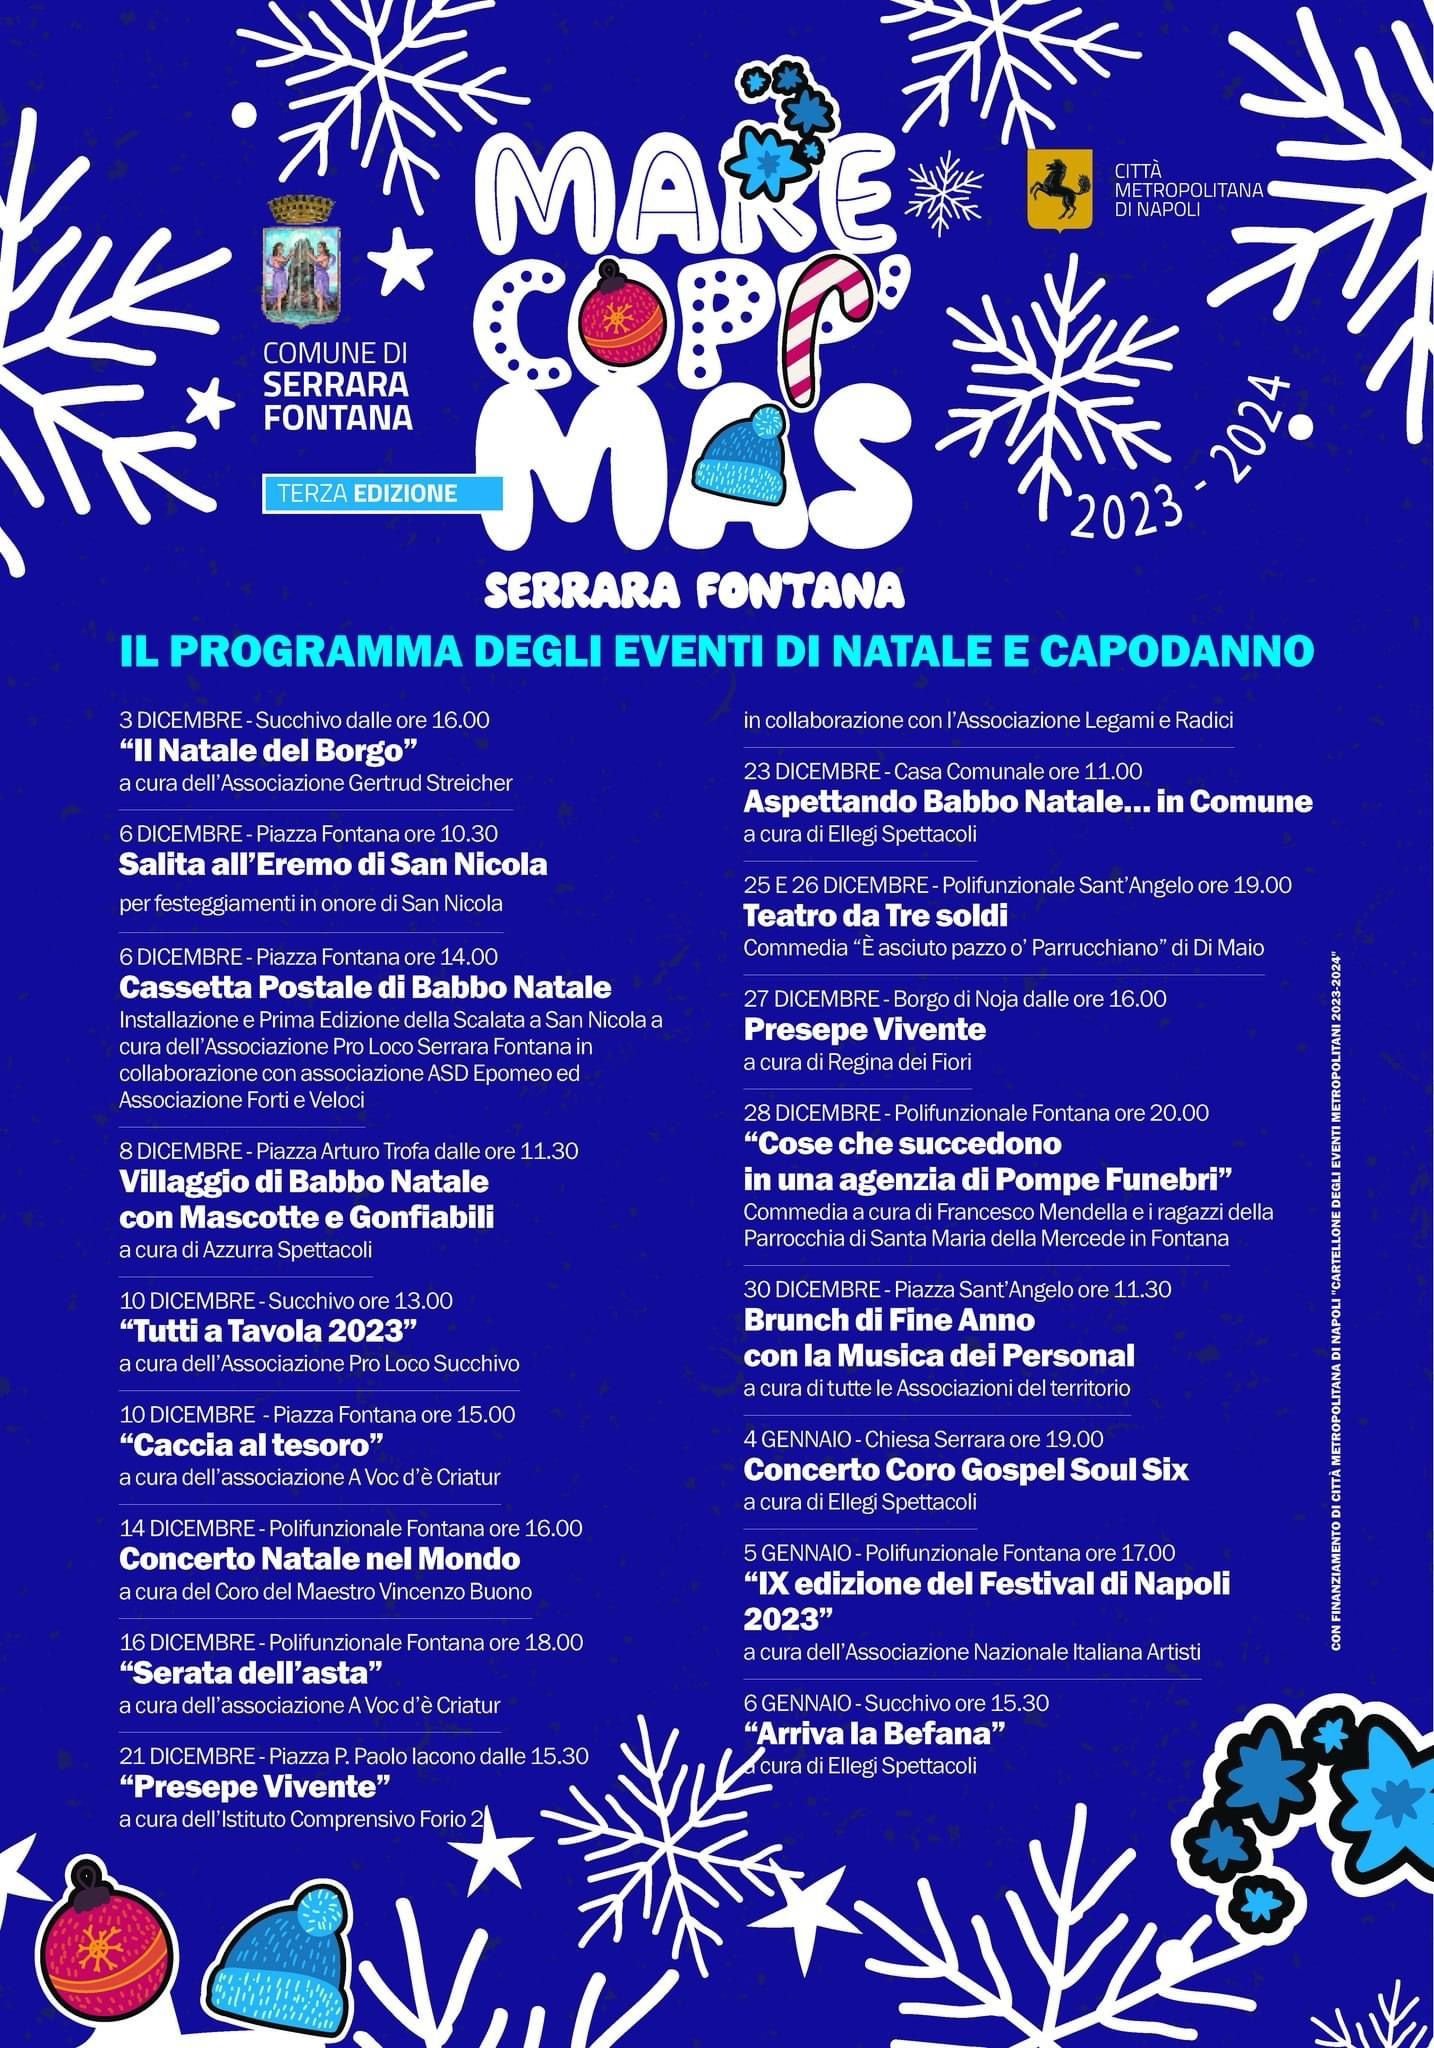 MARECOPP’MAS: “IX edizione del Festival di Napoli 2023”